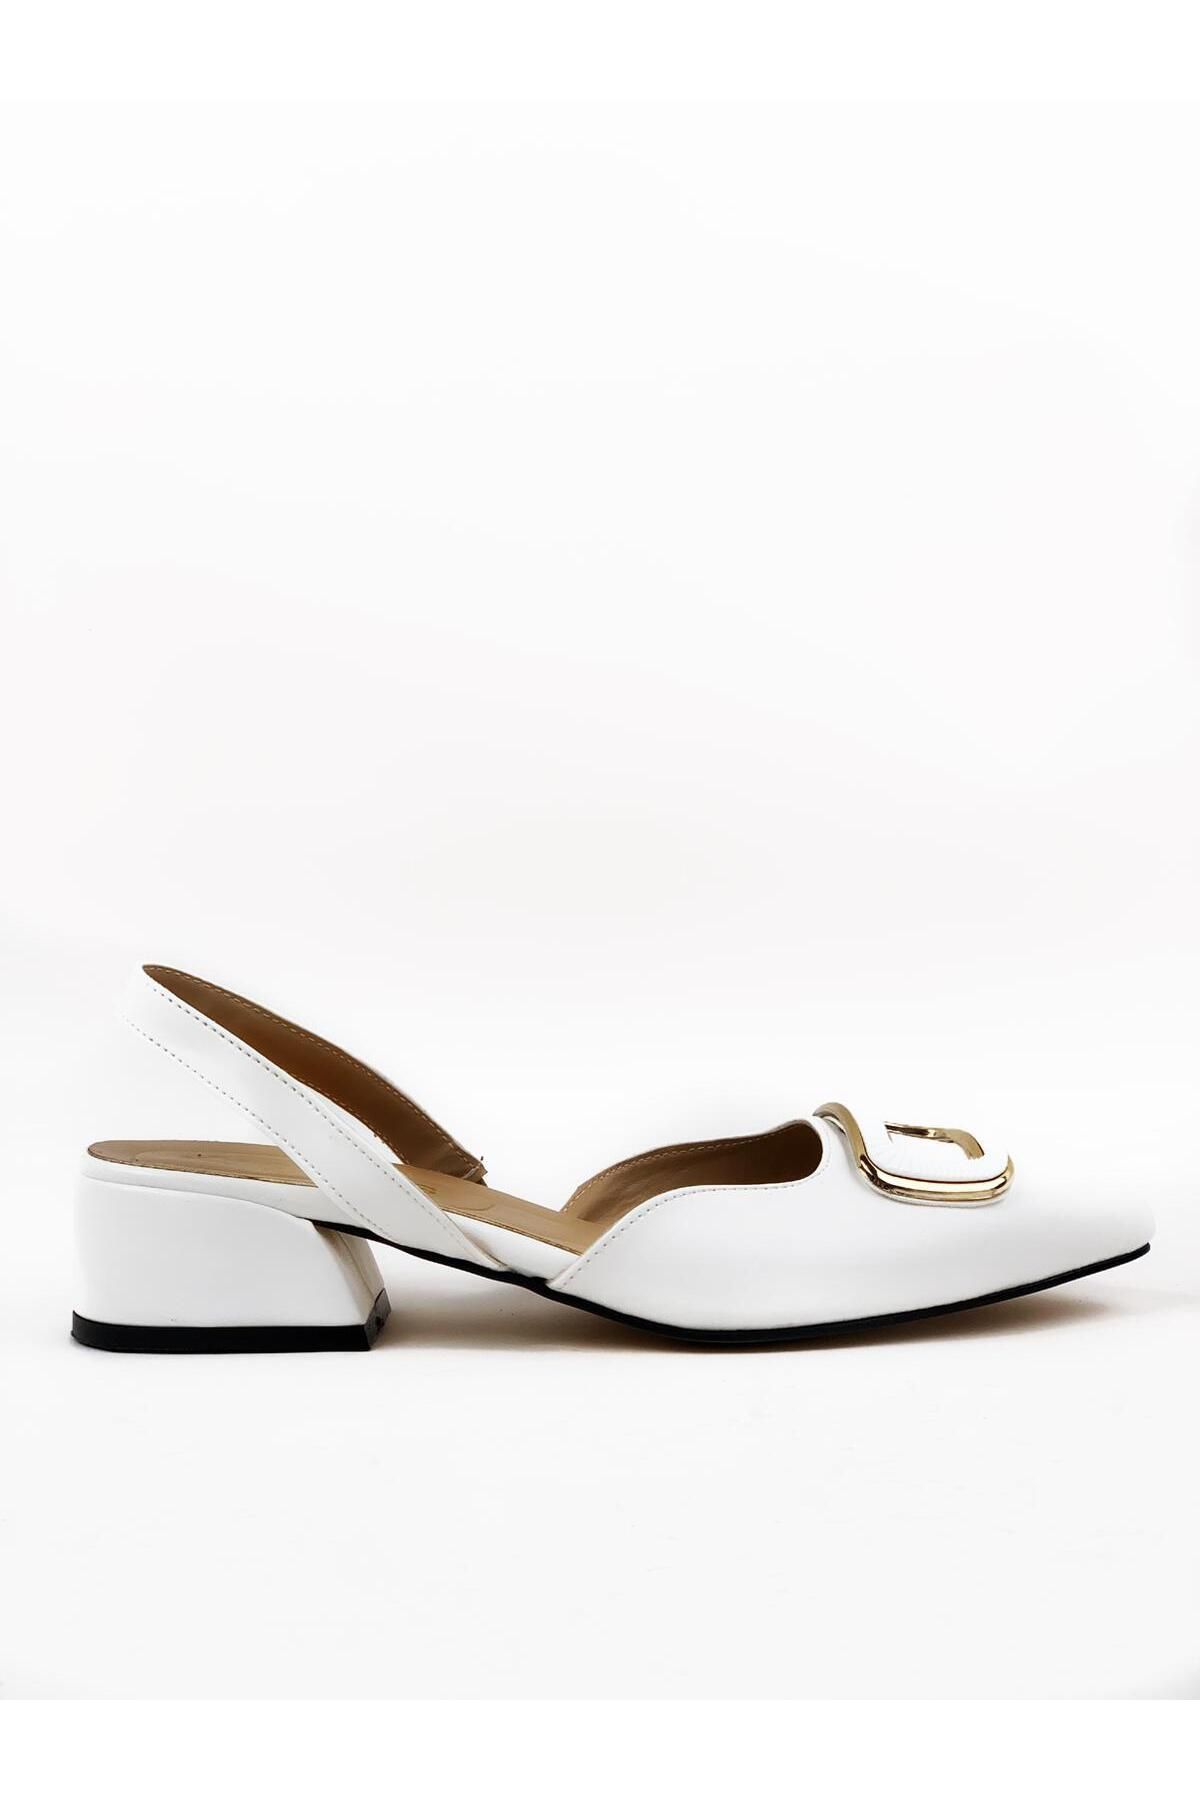 bescobel Kadın Karel Beyaz Alçak Topuk Arkası Açık Kare Tokalı Sandalet Terlik